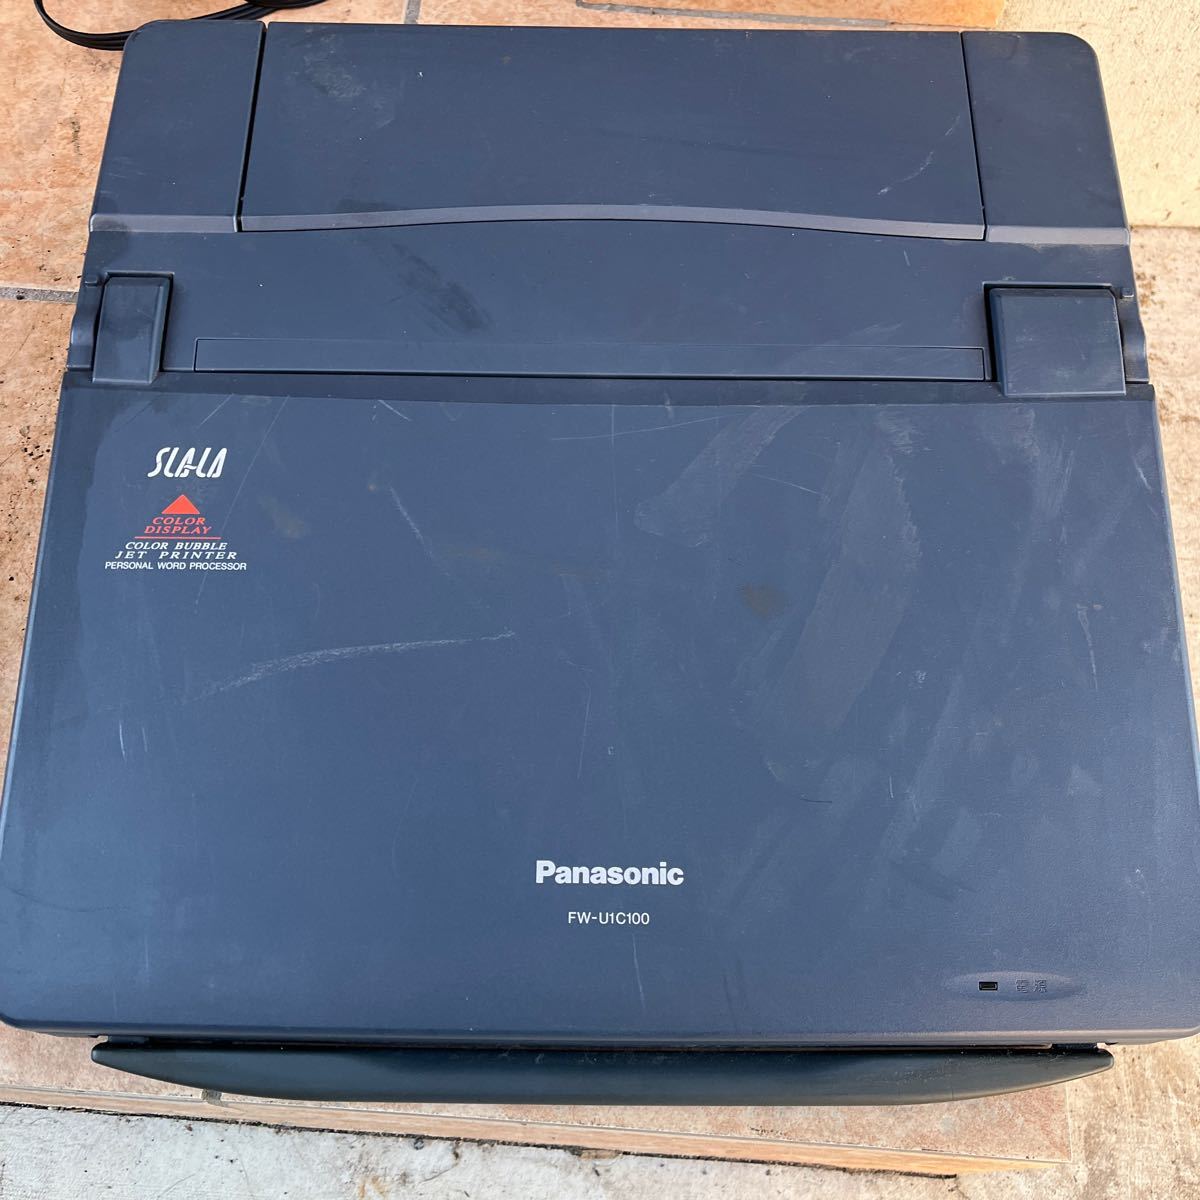 FW-U1C100 Panasonic SLALA ワープロジャンク品部品取り_画像1